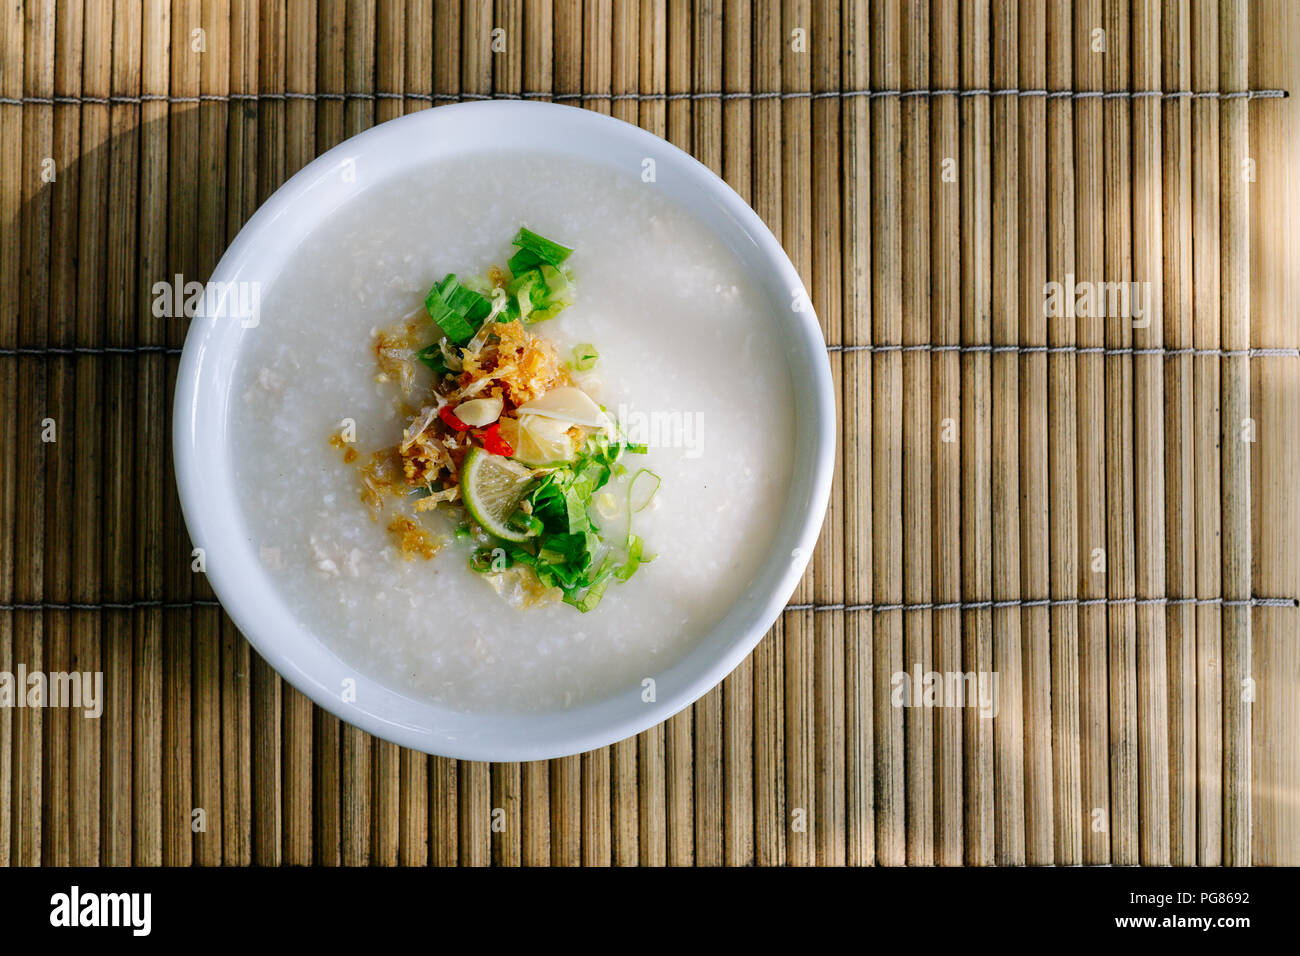 De style thaïlandais ou gruau de riz Riz congee avec ingrédient actif de condiments. (Sauce de poisson, l'ail frit,poivre,piment, oignon de printemps, coriandre et citron vert). Banque D'Images